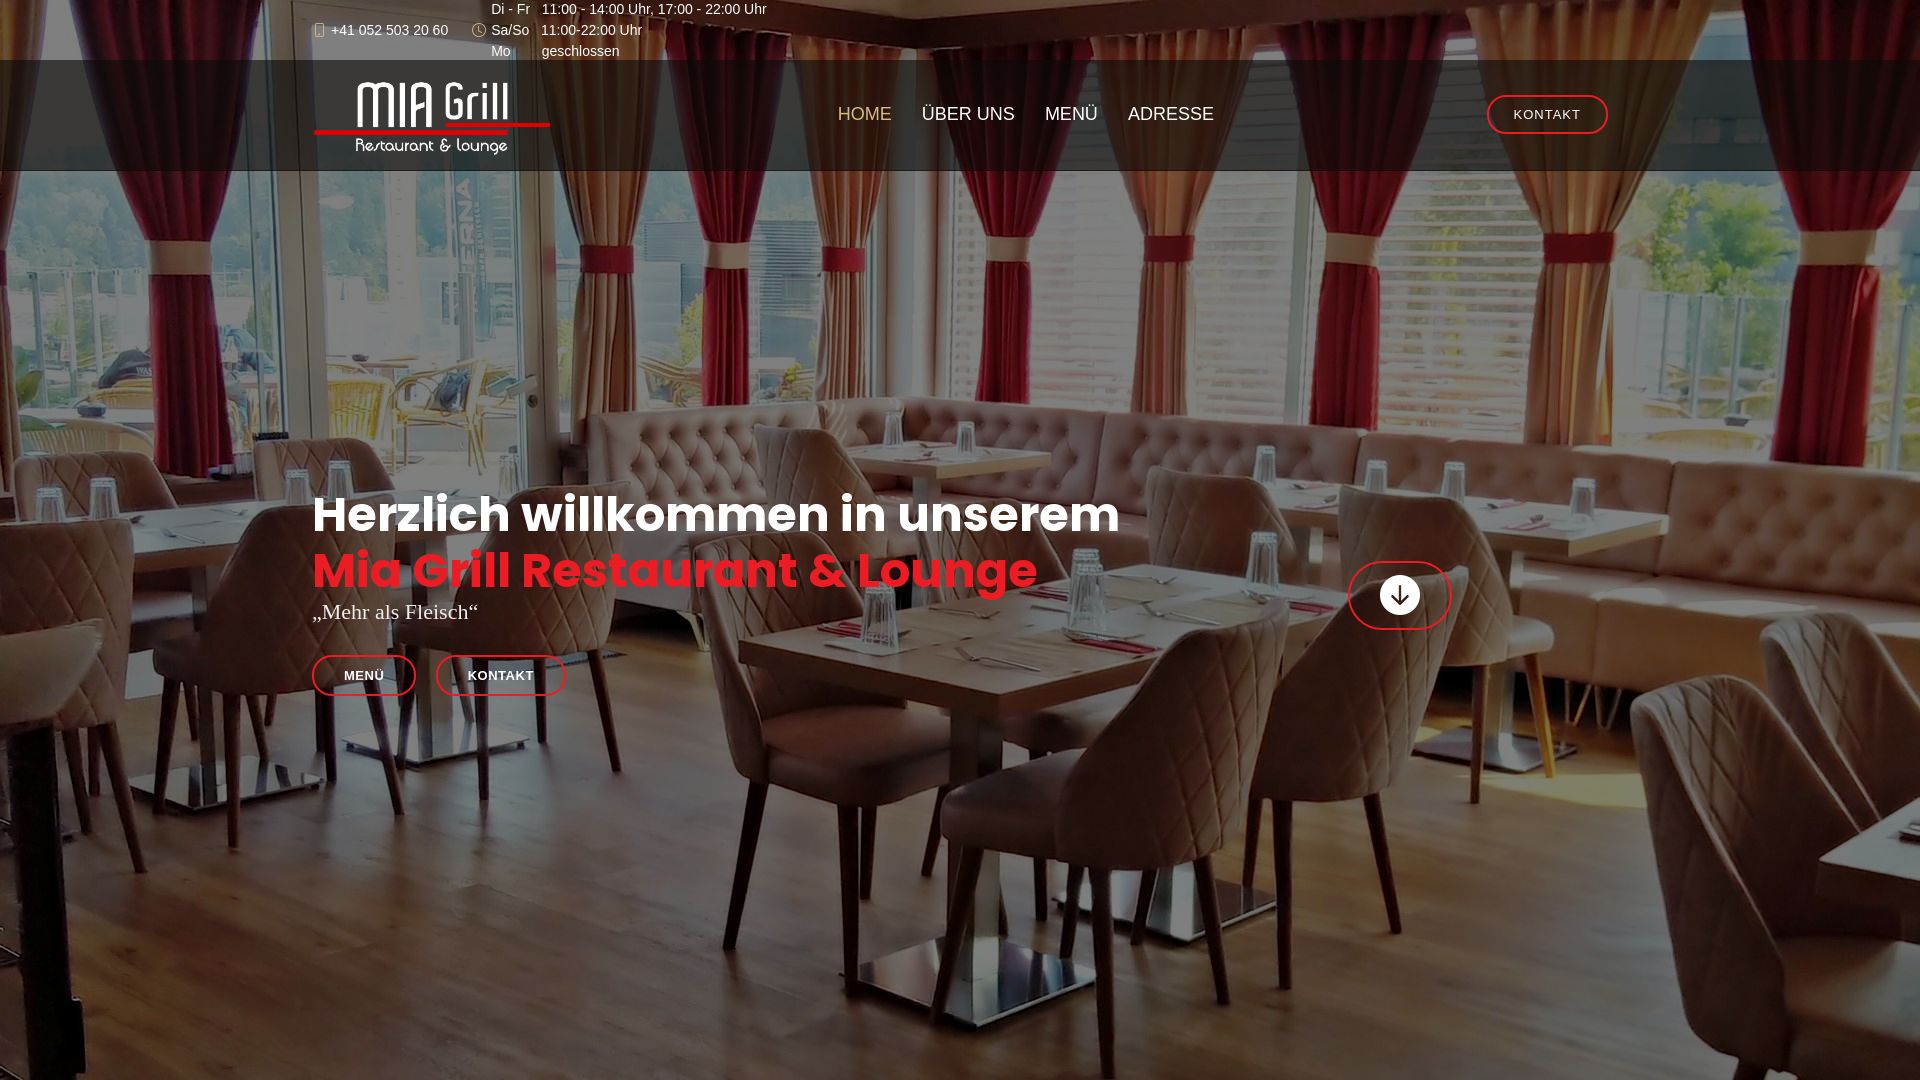 Estado web mia-grill.ch está   ONLINE